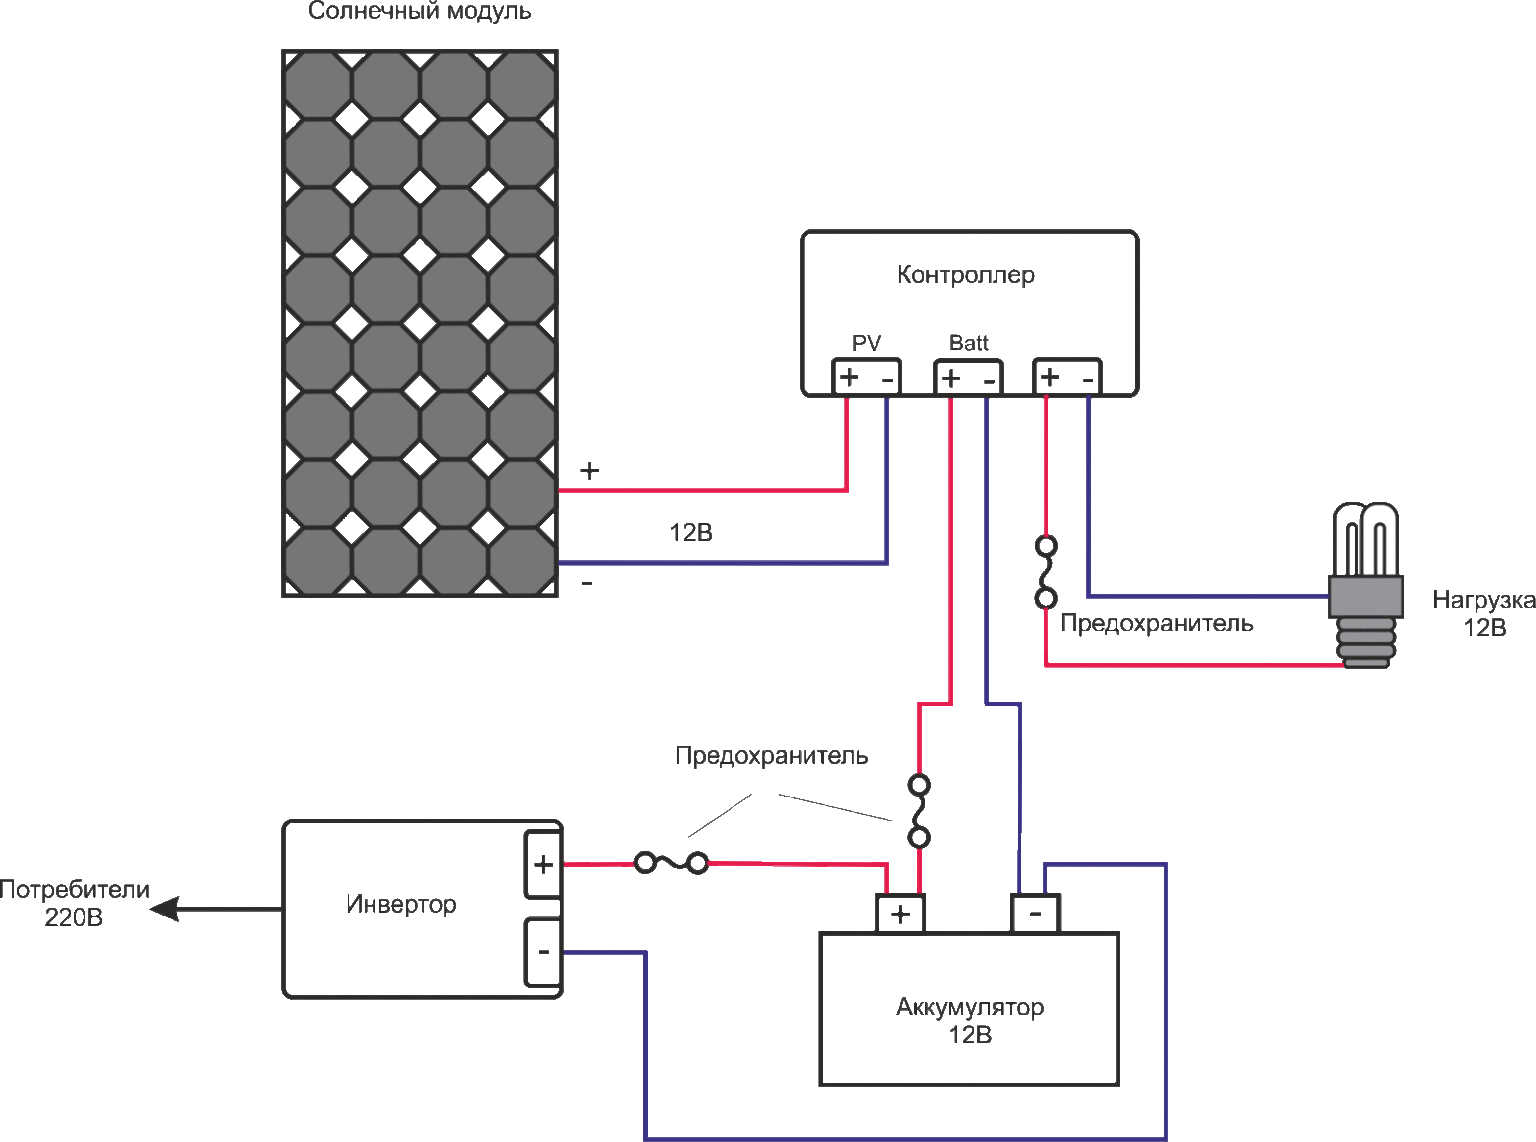 Как работают солнечные батареи: принцип, устройство, материалы